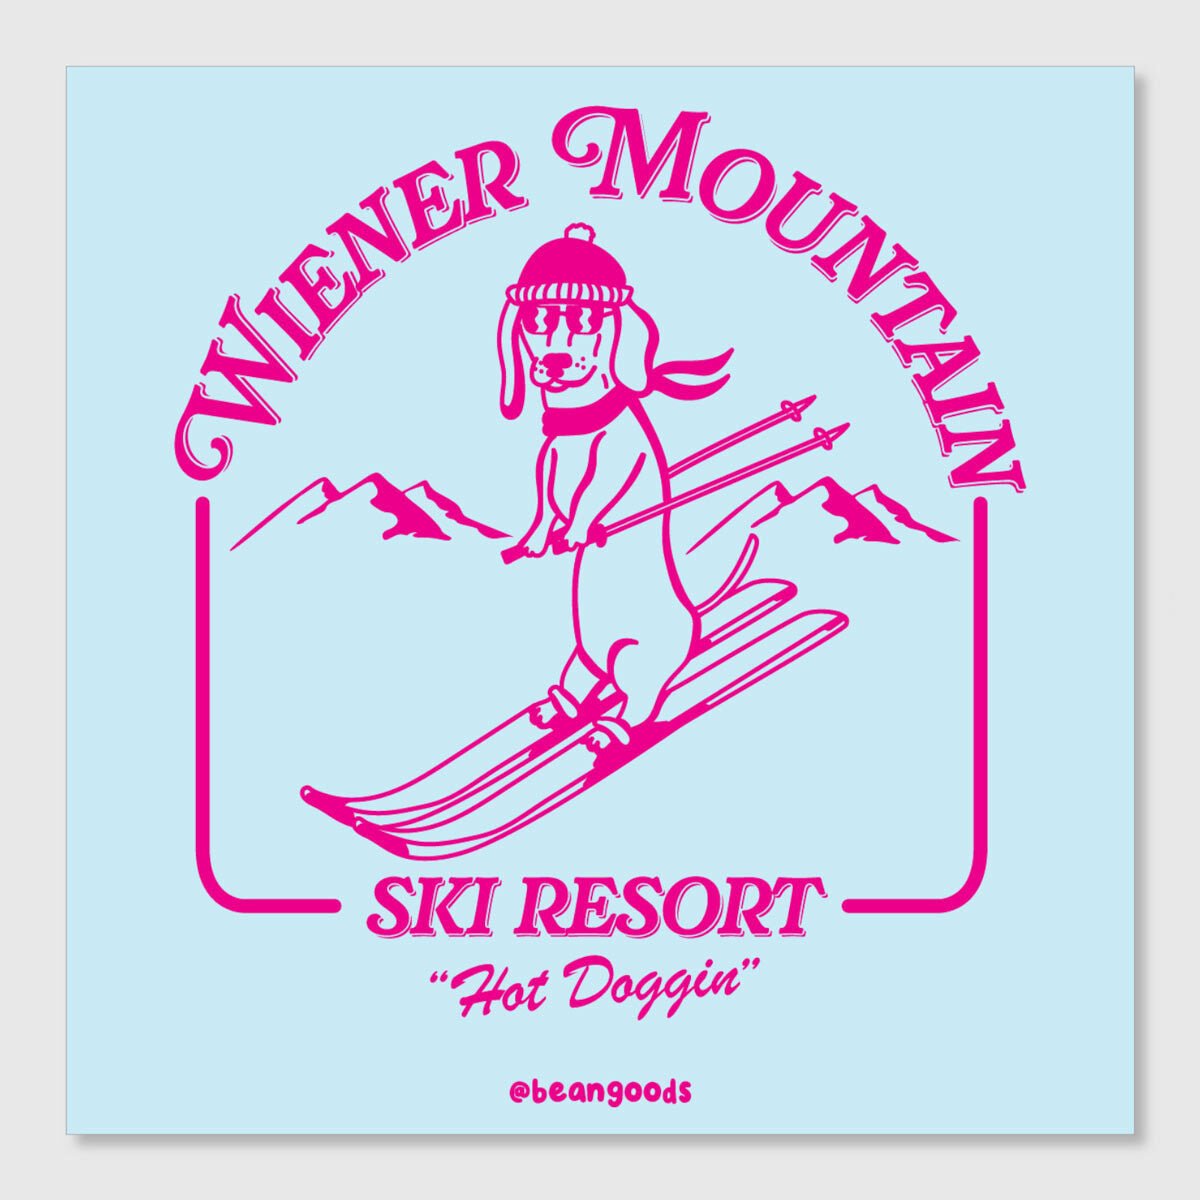 wiener mountain ski resort sticker - bean goods